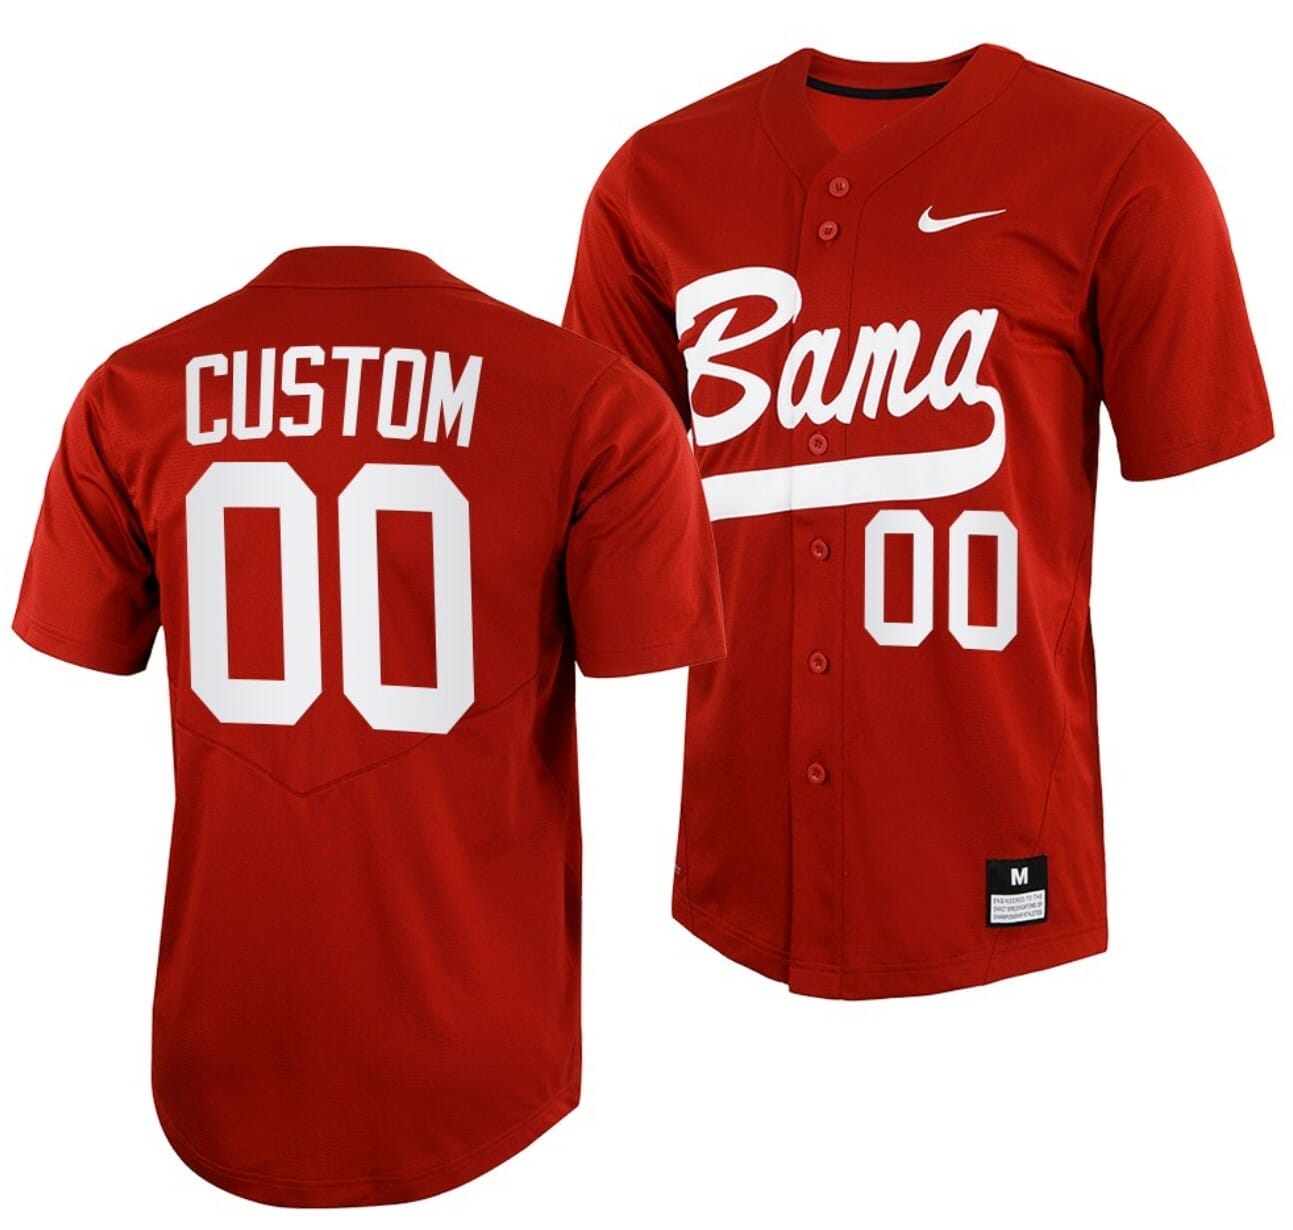 [[Hot] New Custom Alabama Crimson Tide Baseball Jersey